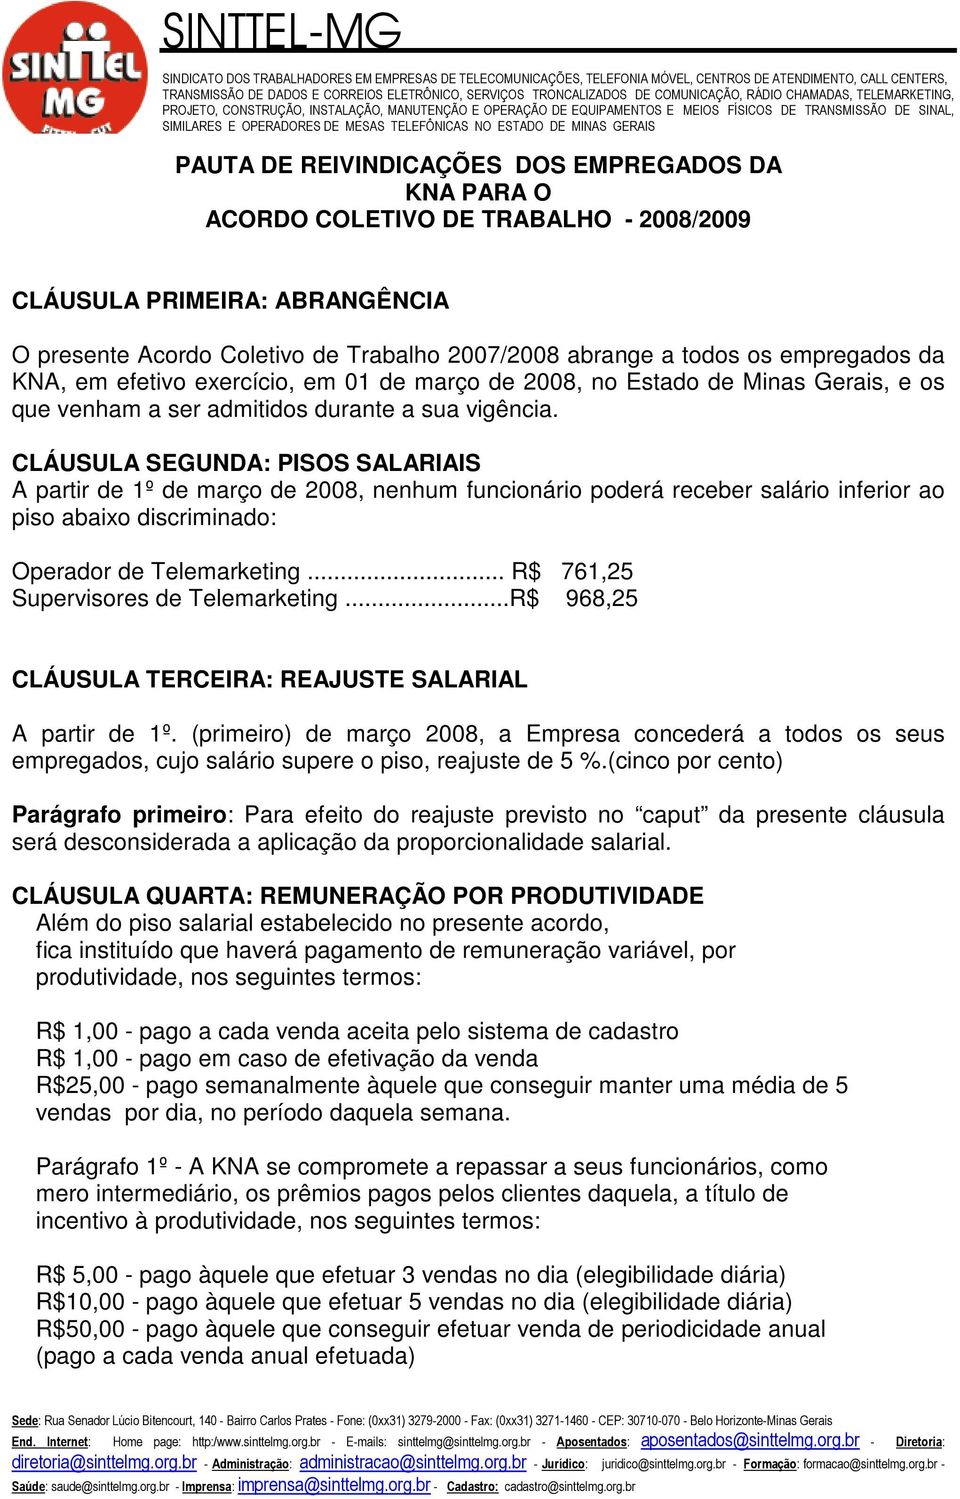 CLÁUSULA SEGUNDA: PISOS SALARIAIS A partir de 1º de março de 2008, nenhum funcionário poderá receber salário inferior ao piso abaixo discriminado: Operador de Telemarketing.